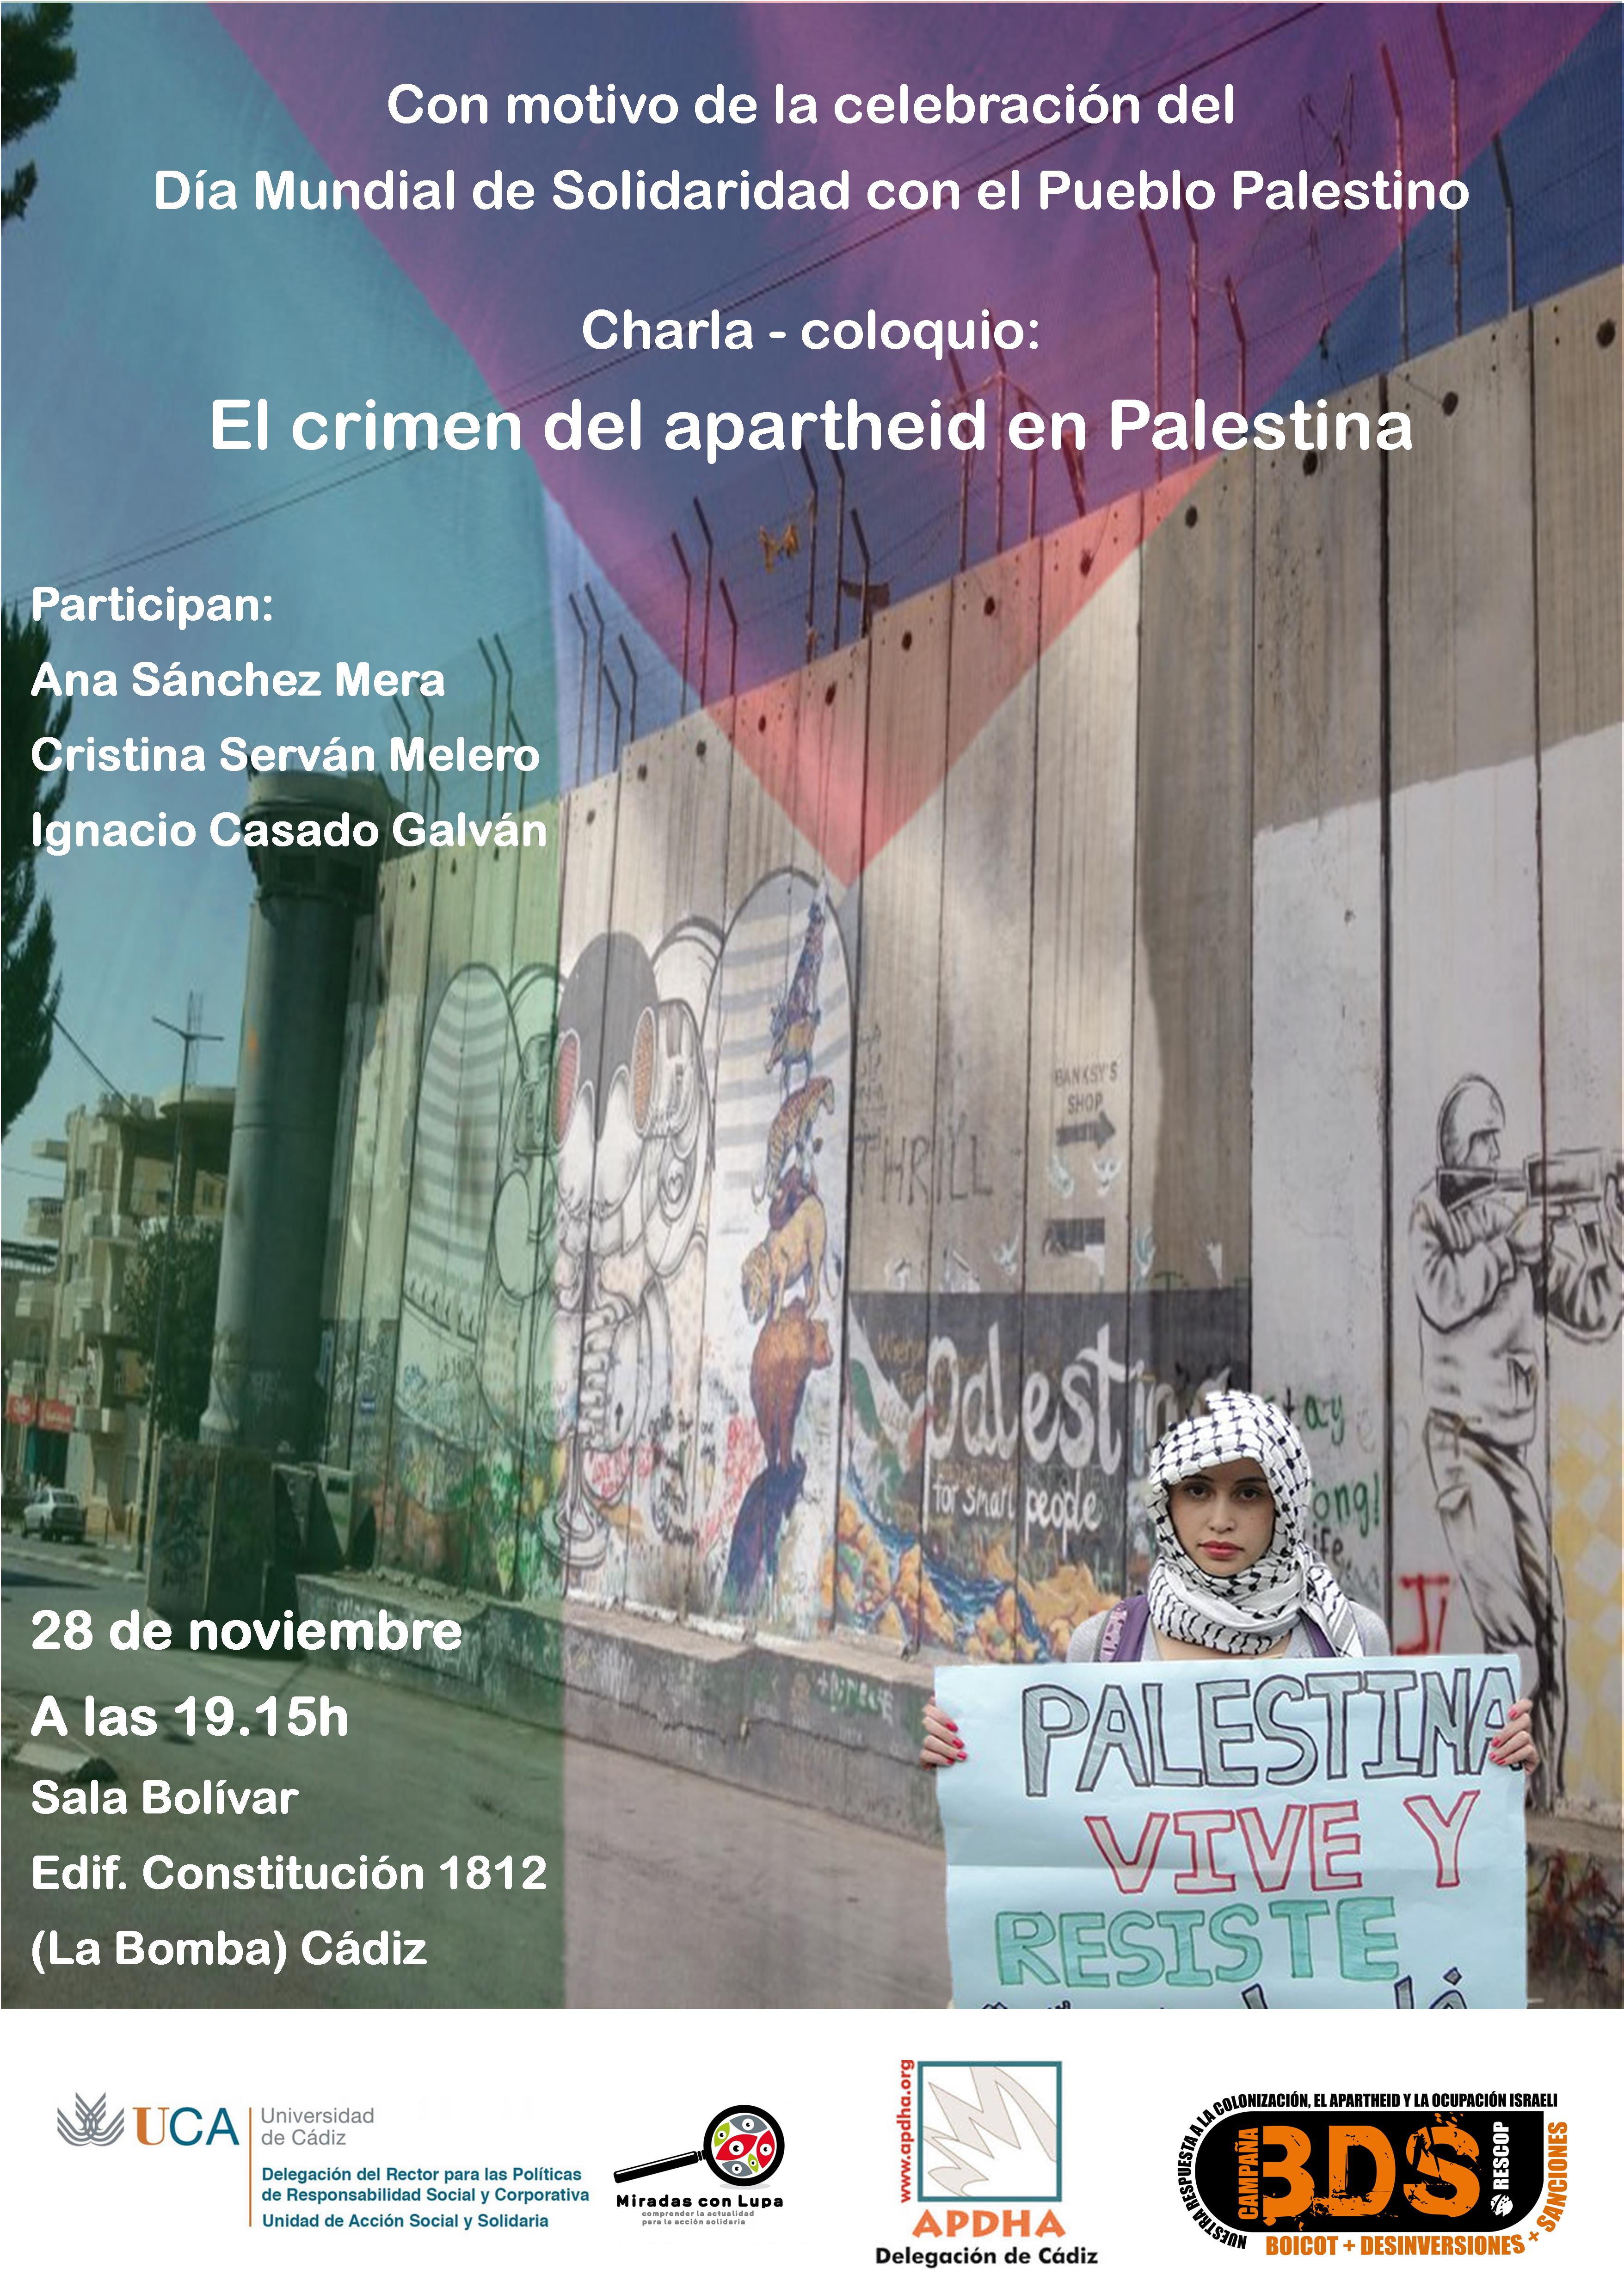 28 de Noviembre. Charla-coloquio con motivo del Día Internacional de Solidaridad con el Pueblo Palestino. Campus de Cádiz